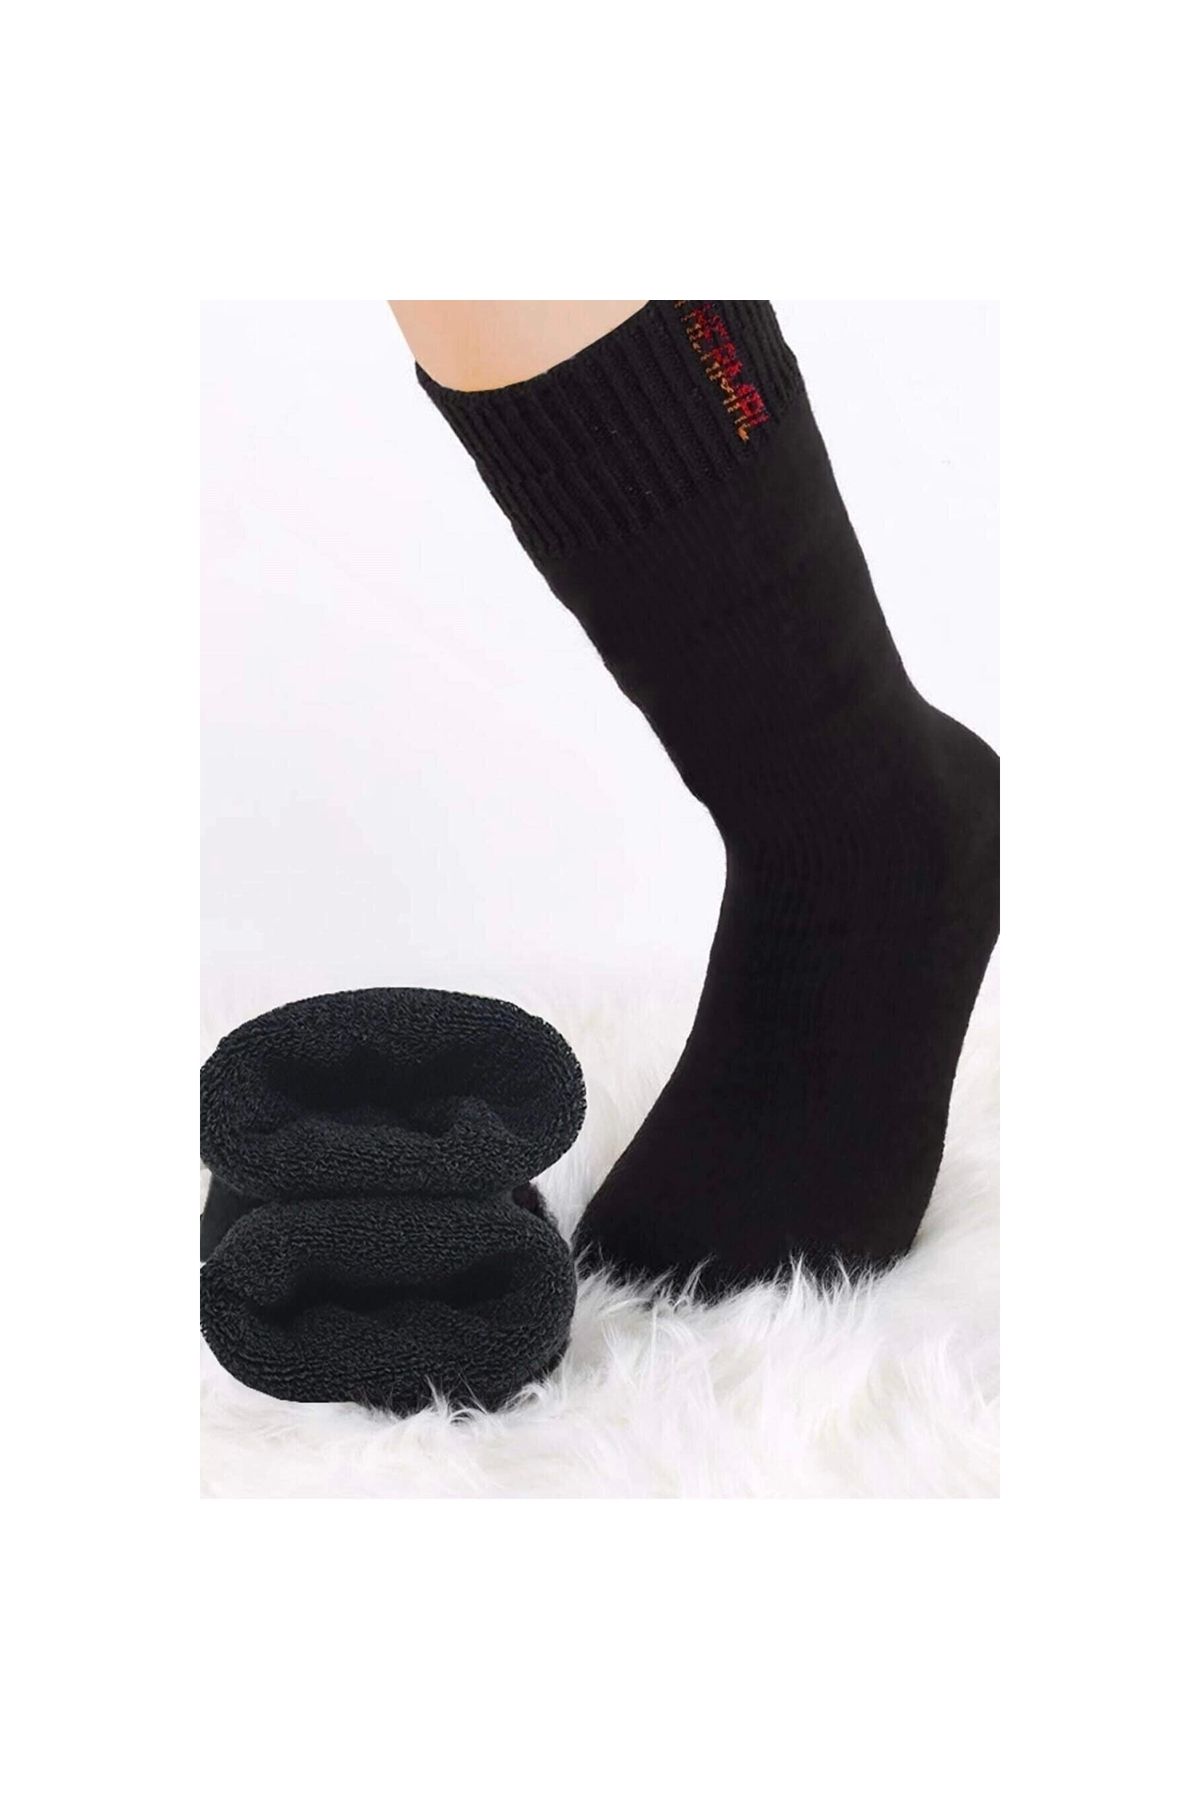 Narnuga MODLİVE Siyah Termal Kalın Kışlık Havlu Çorap Erkek Kadın Unisex Pamuk